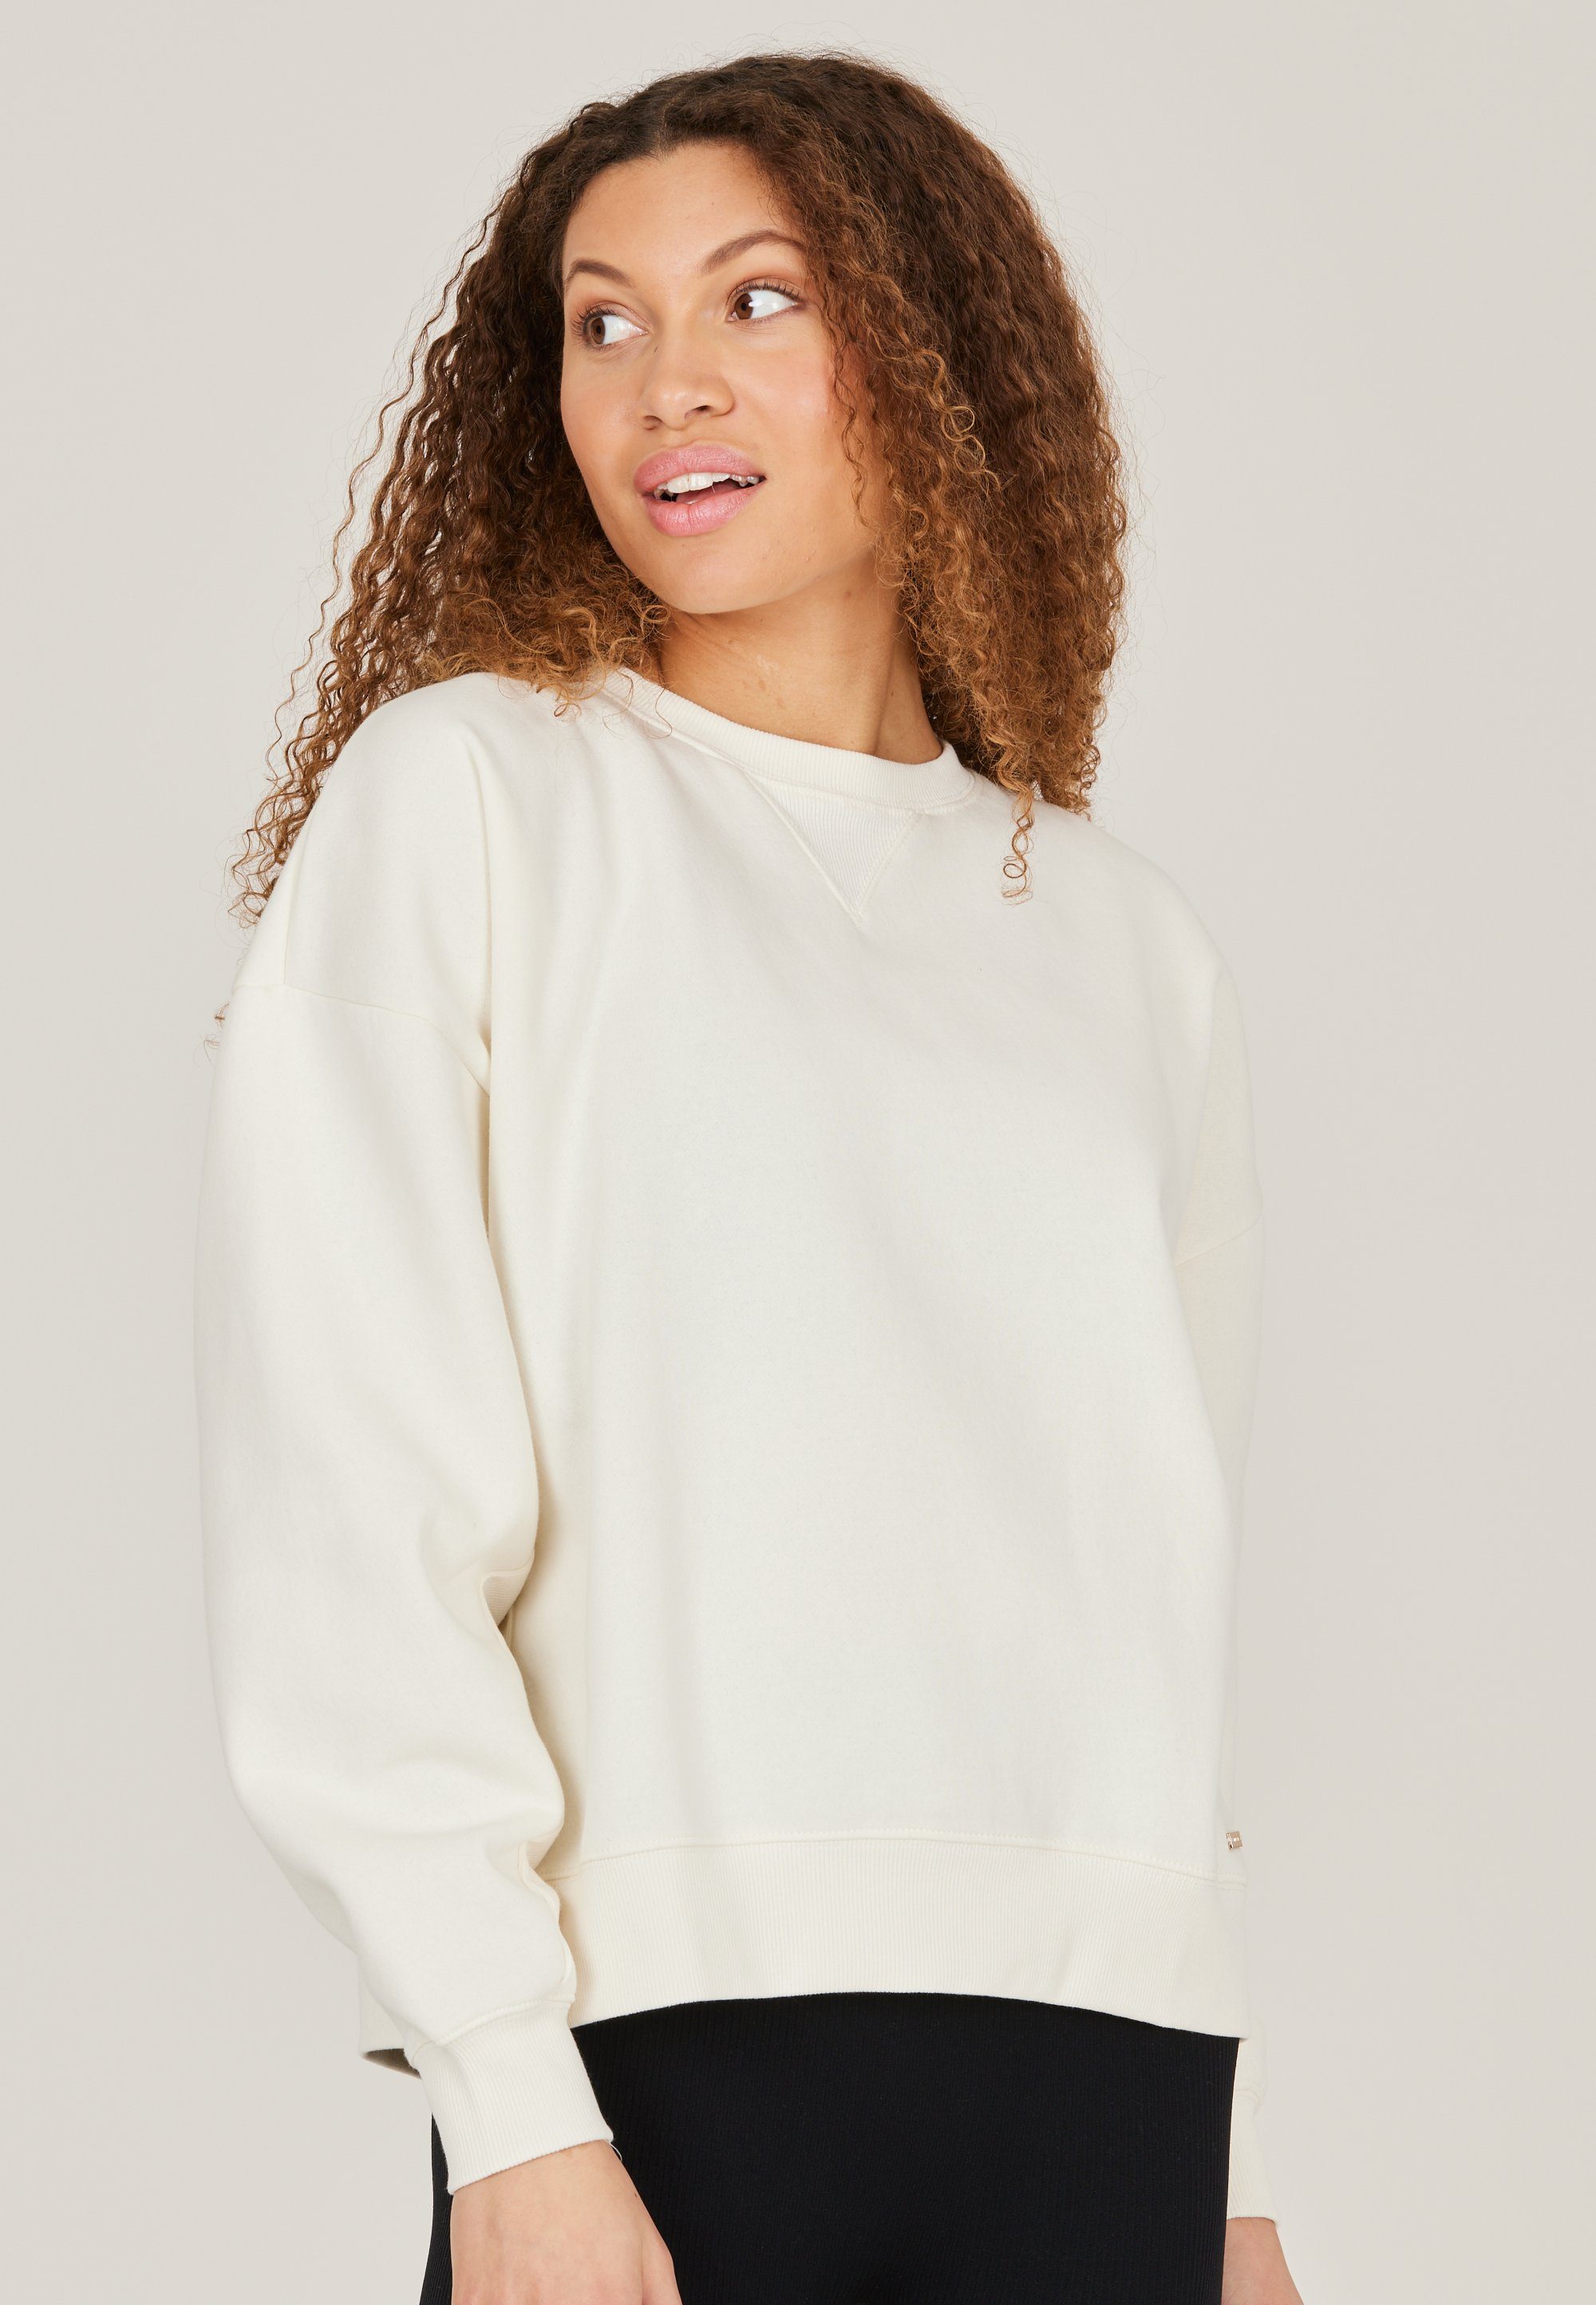 ATHLECIA Sweatshirt Eudonie im lässigen Oversized-Schnitt weiß